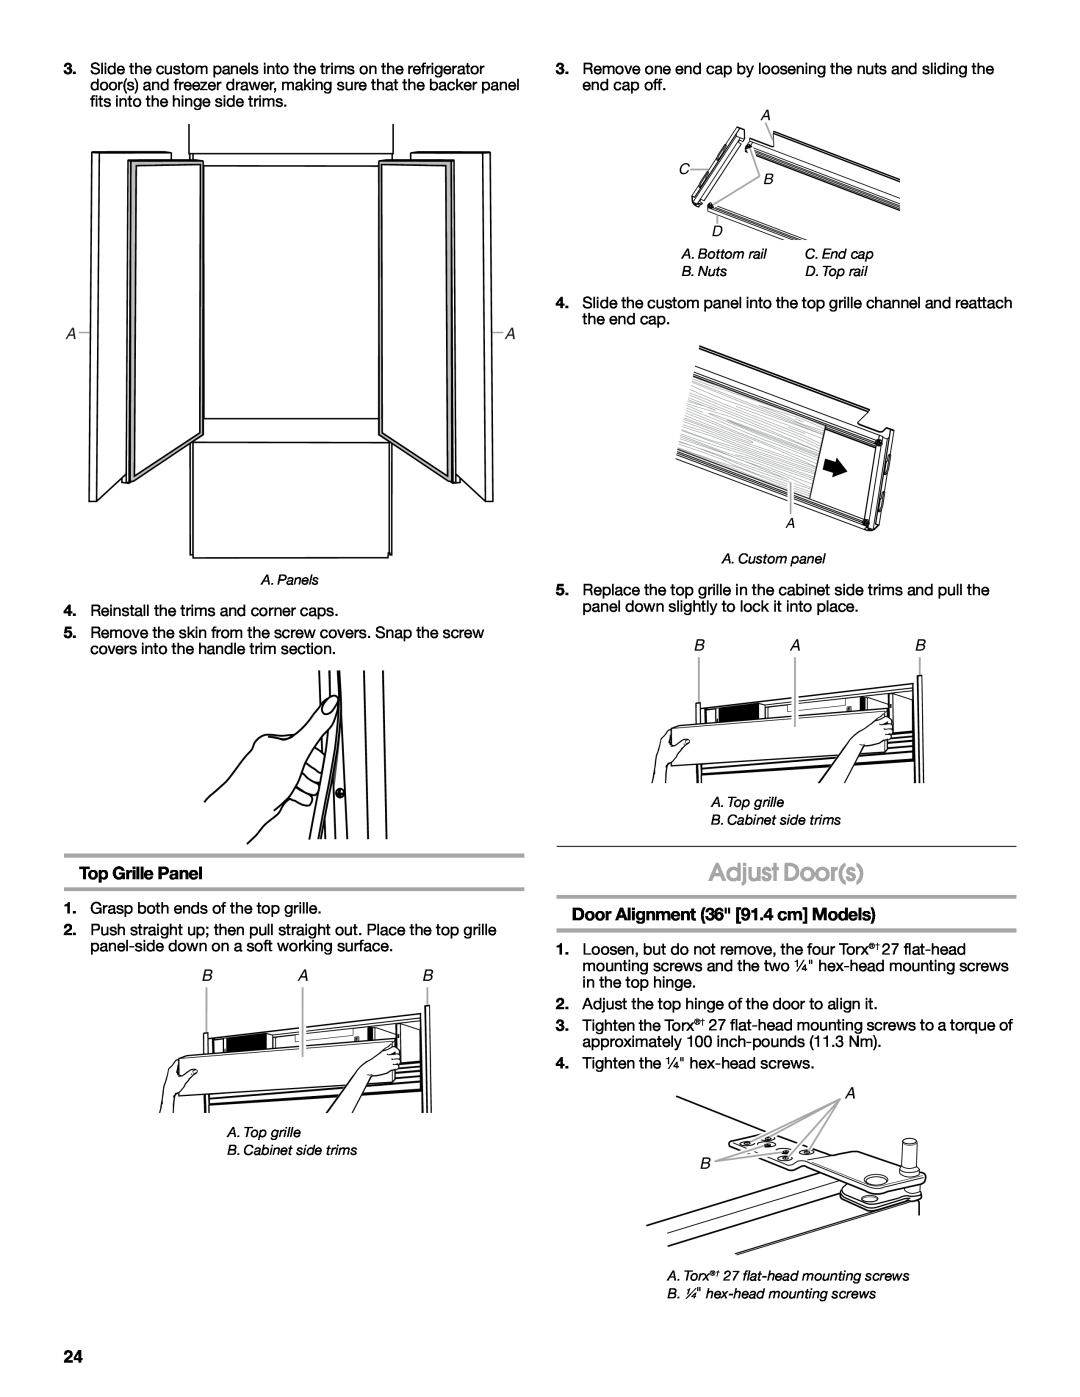 Jenn-Air W10183782A manual Adjust Doors, Top Grille Panel, Door Alignment 36 91.4 cm Models 